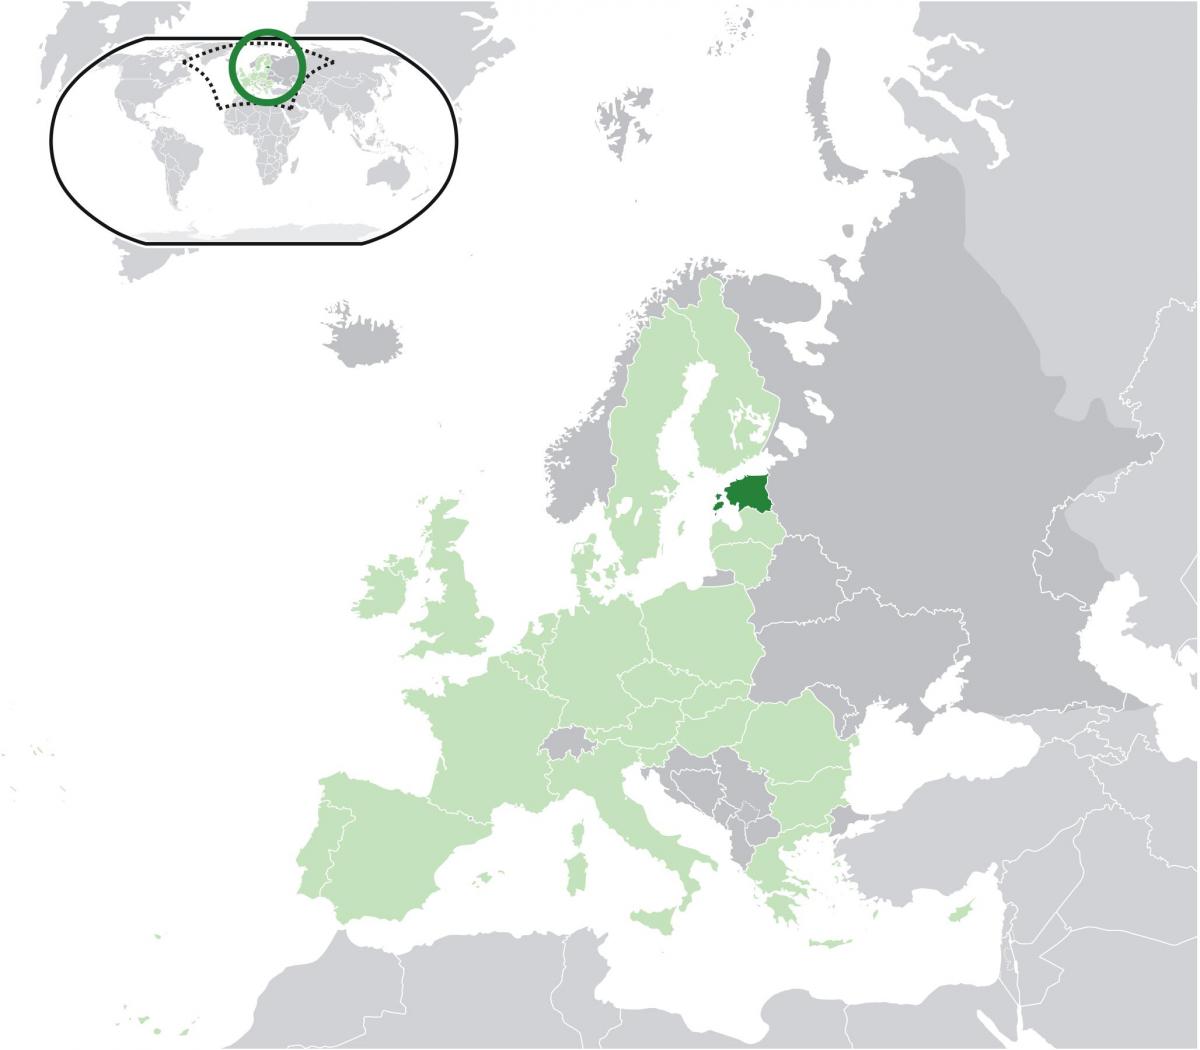 เอสโทเนียบนแผนที่ของยุโรป